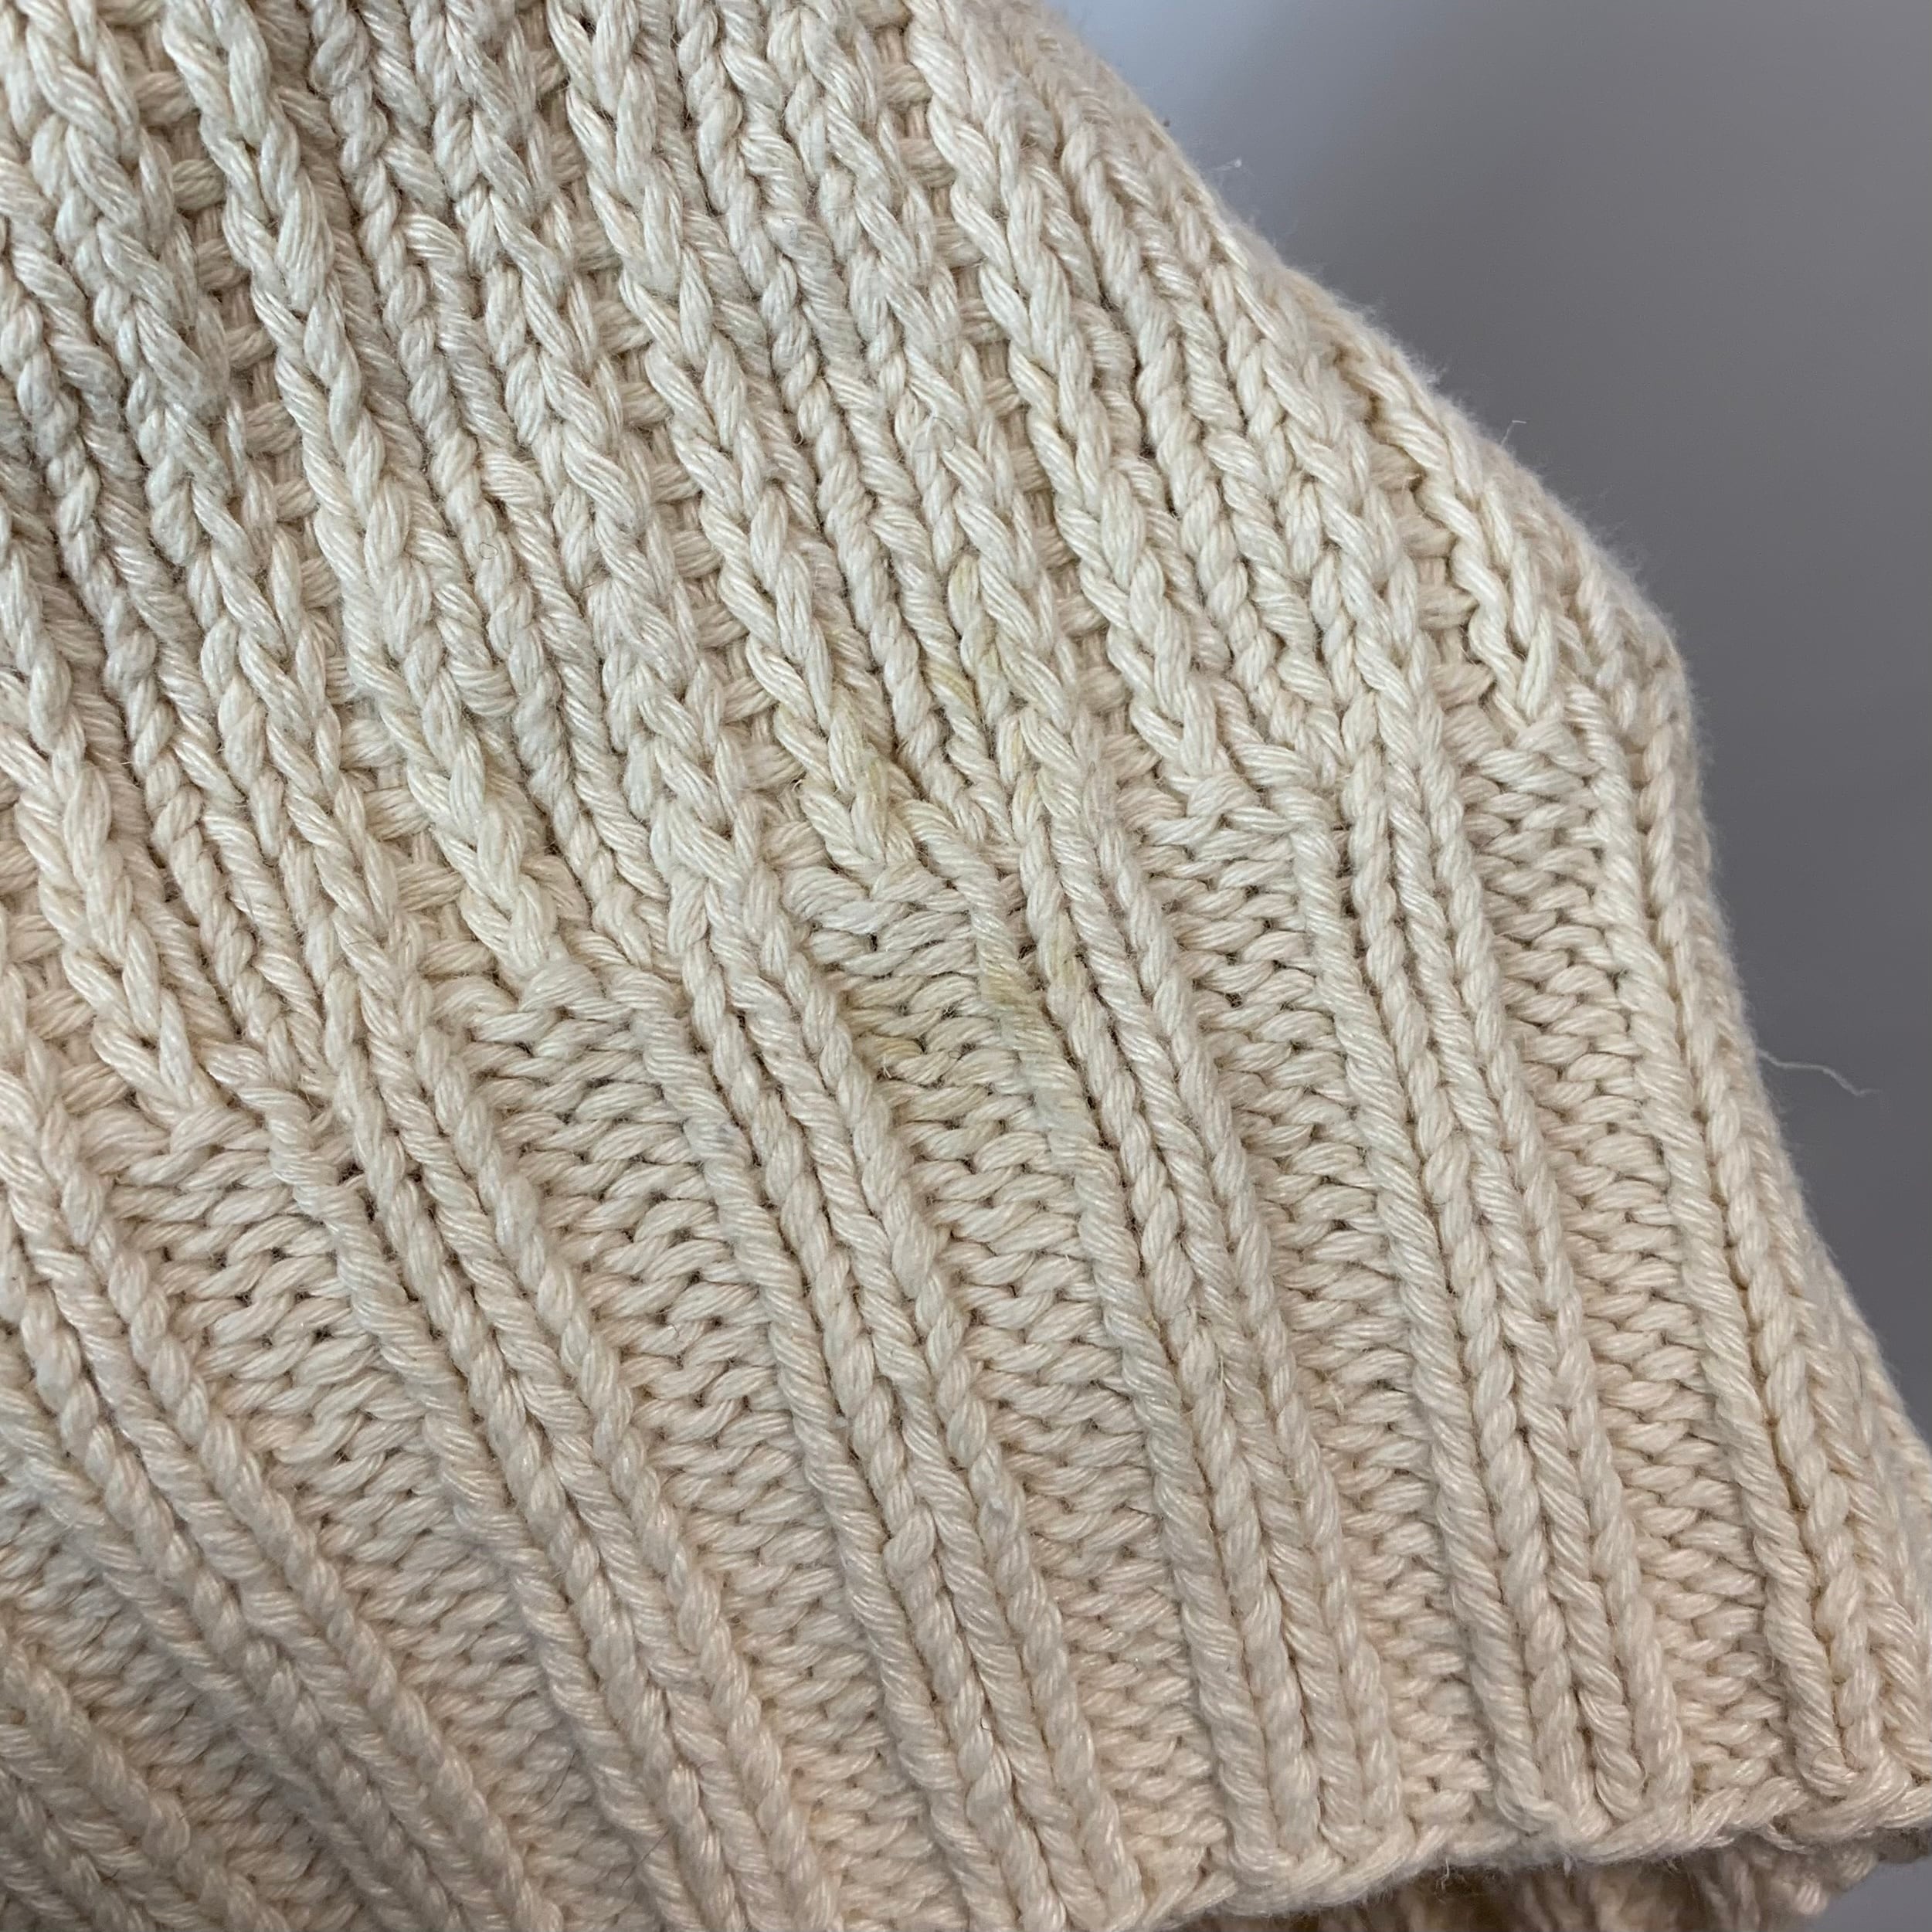 vintage old 90s RALPH LAUREN POLO SPORT cotton knit cotton sweater